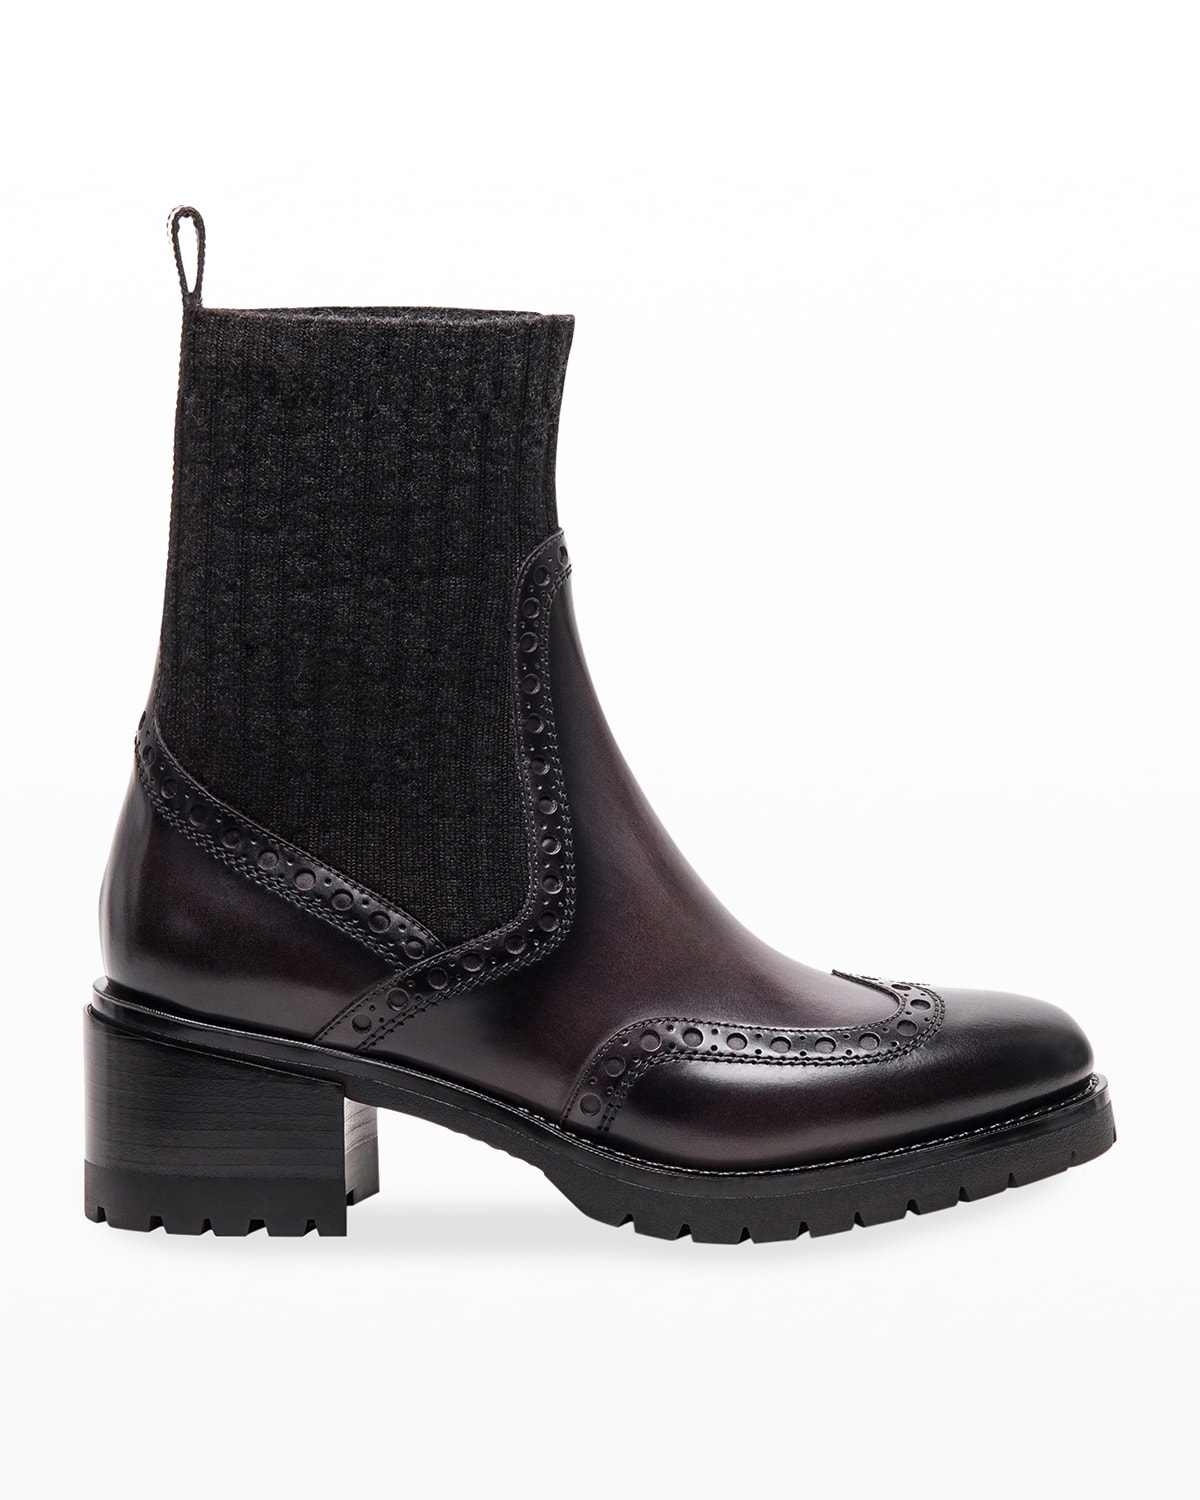 SANTONI Boots for Women | ModeSens